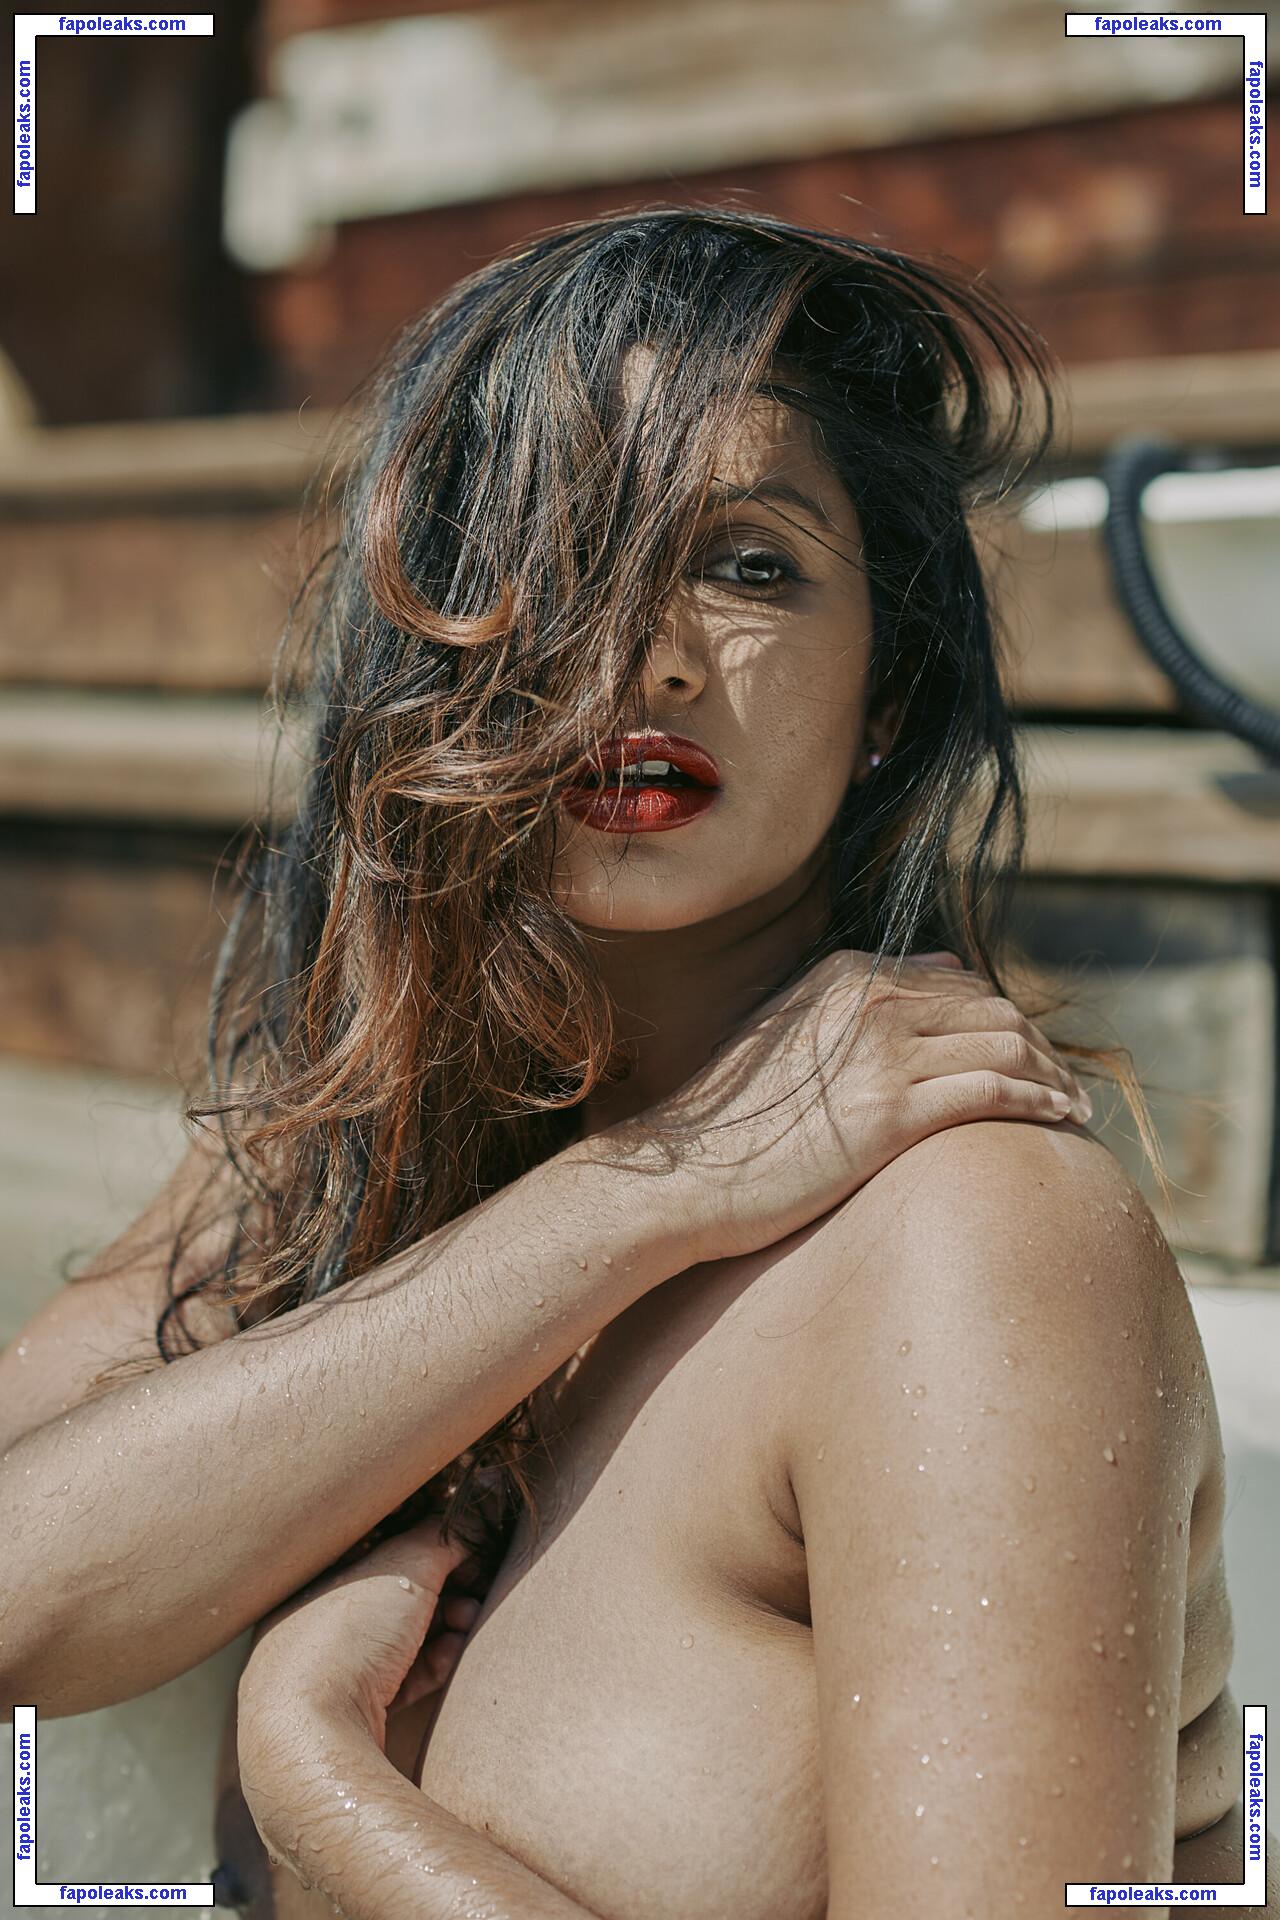 Dakini / Carla White / Devi / googlymonstor nude photo #0006 from OnlyFans